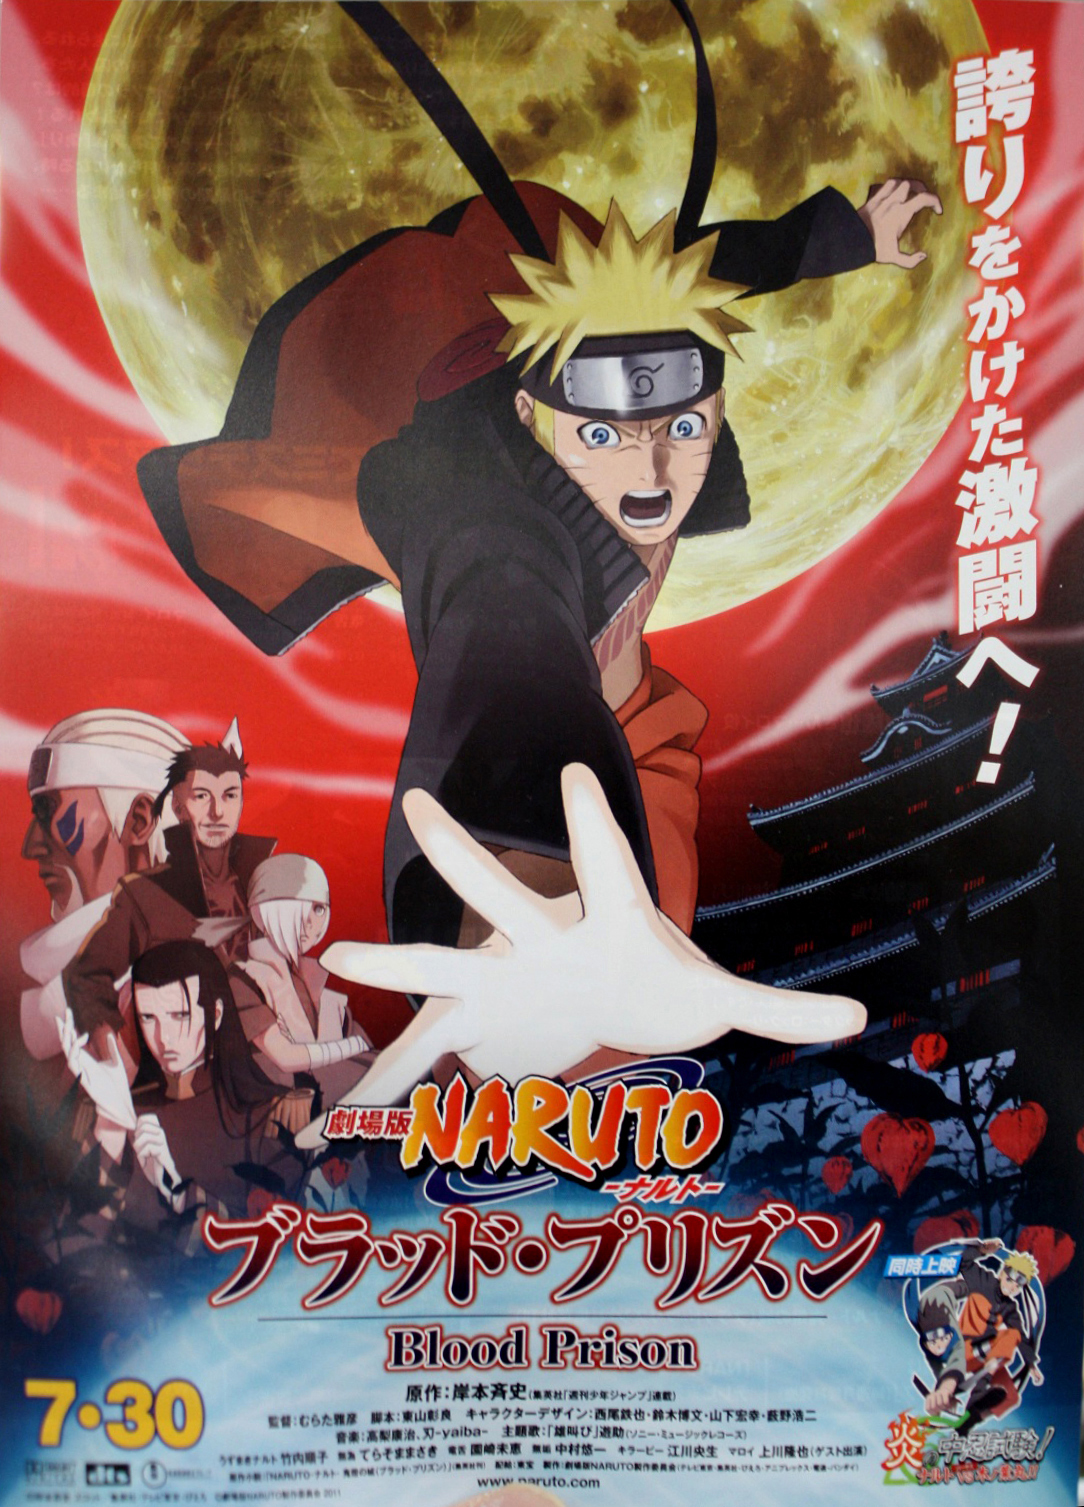  الجزء الخامس من فيلم الآنيمي الأكشن الرائع - Naruto Shippuuden Blood Prison 2012 - مُترجم - للتحميل على أكثر من سيرفر  Naruto+Shippuuden+Movie+5++Blood+Prison